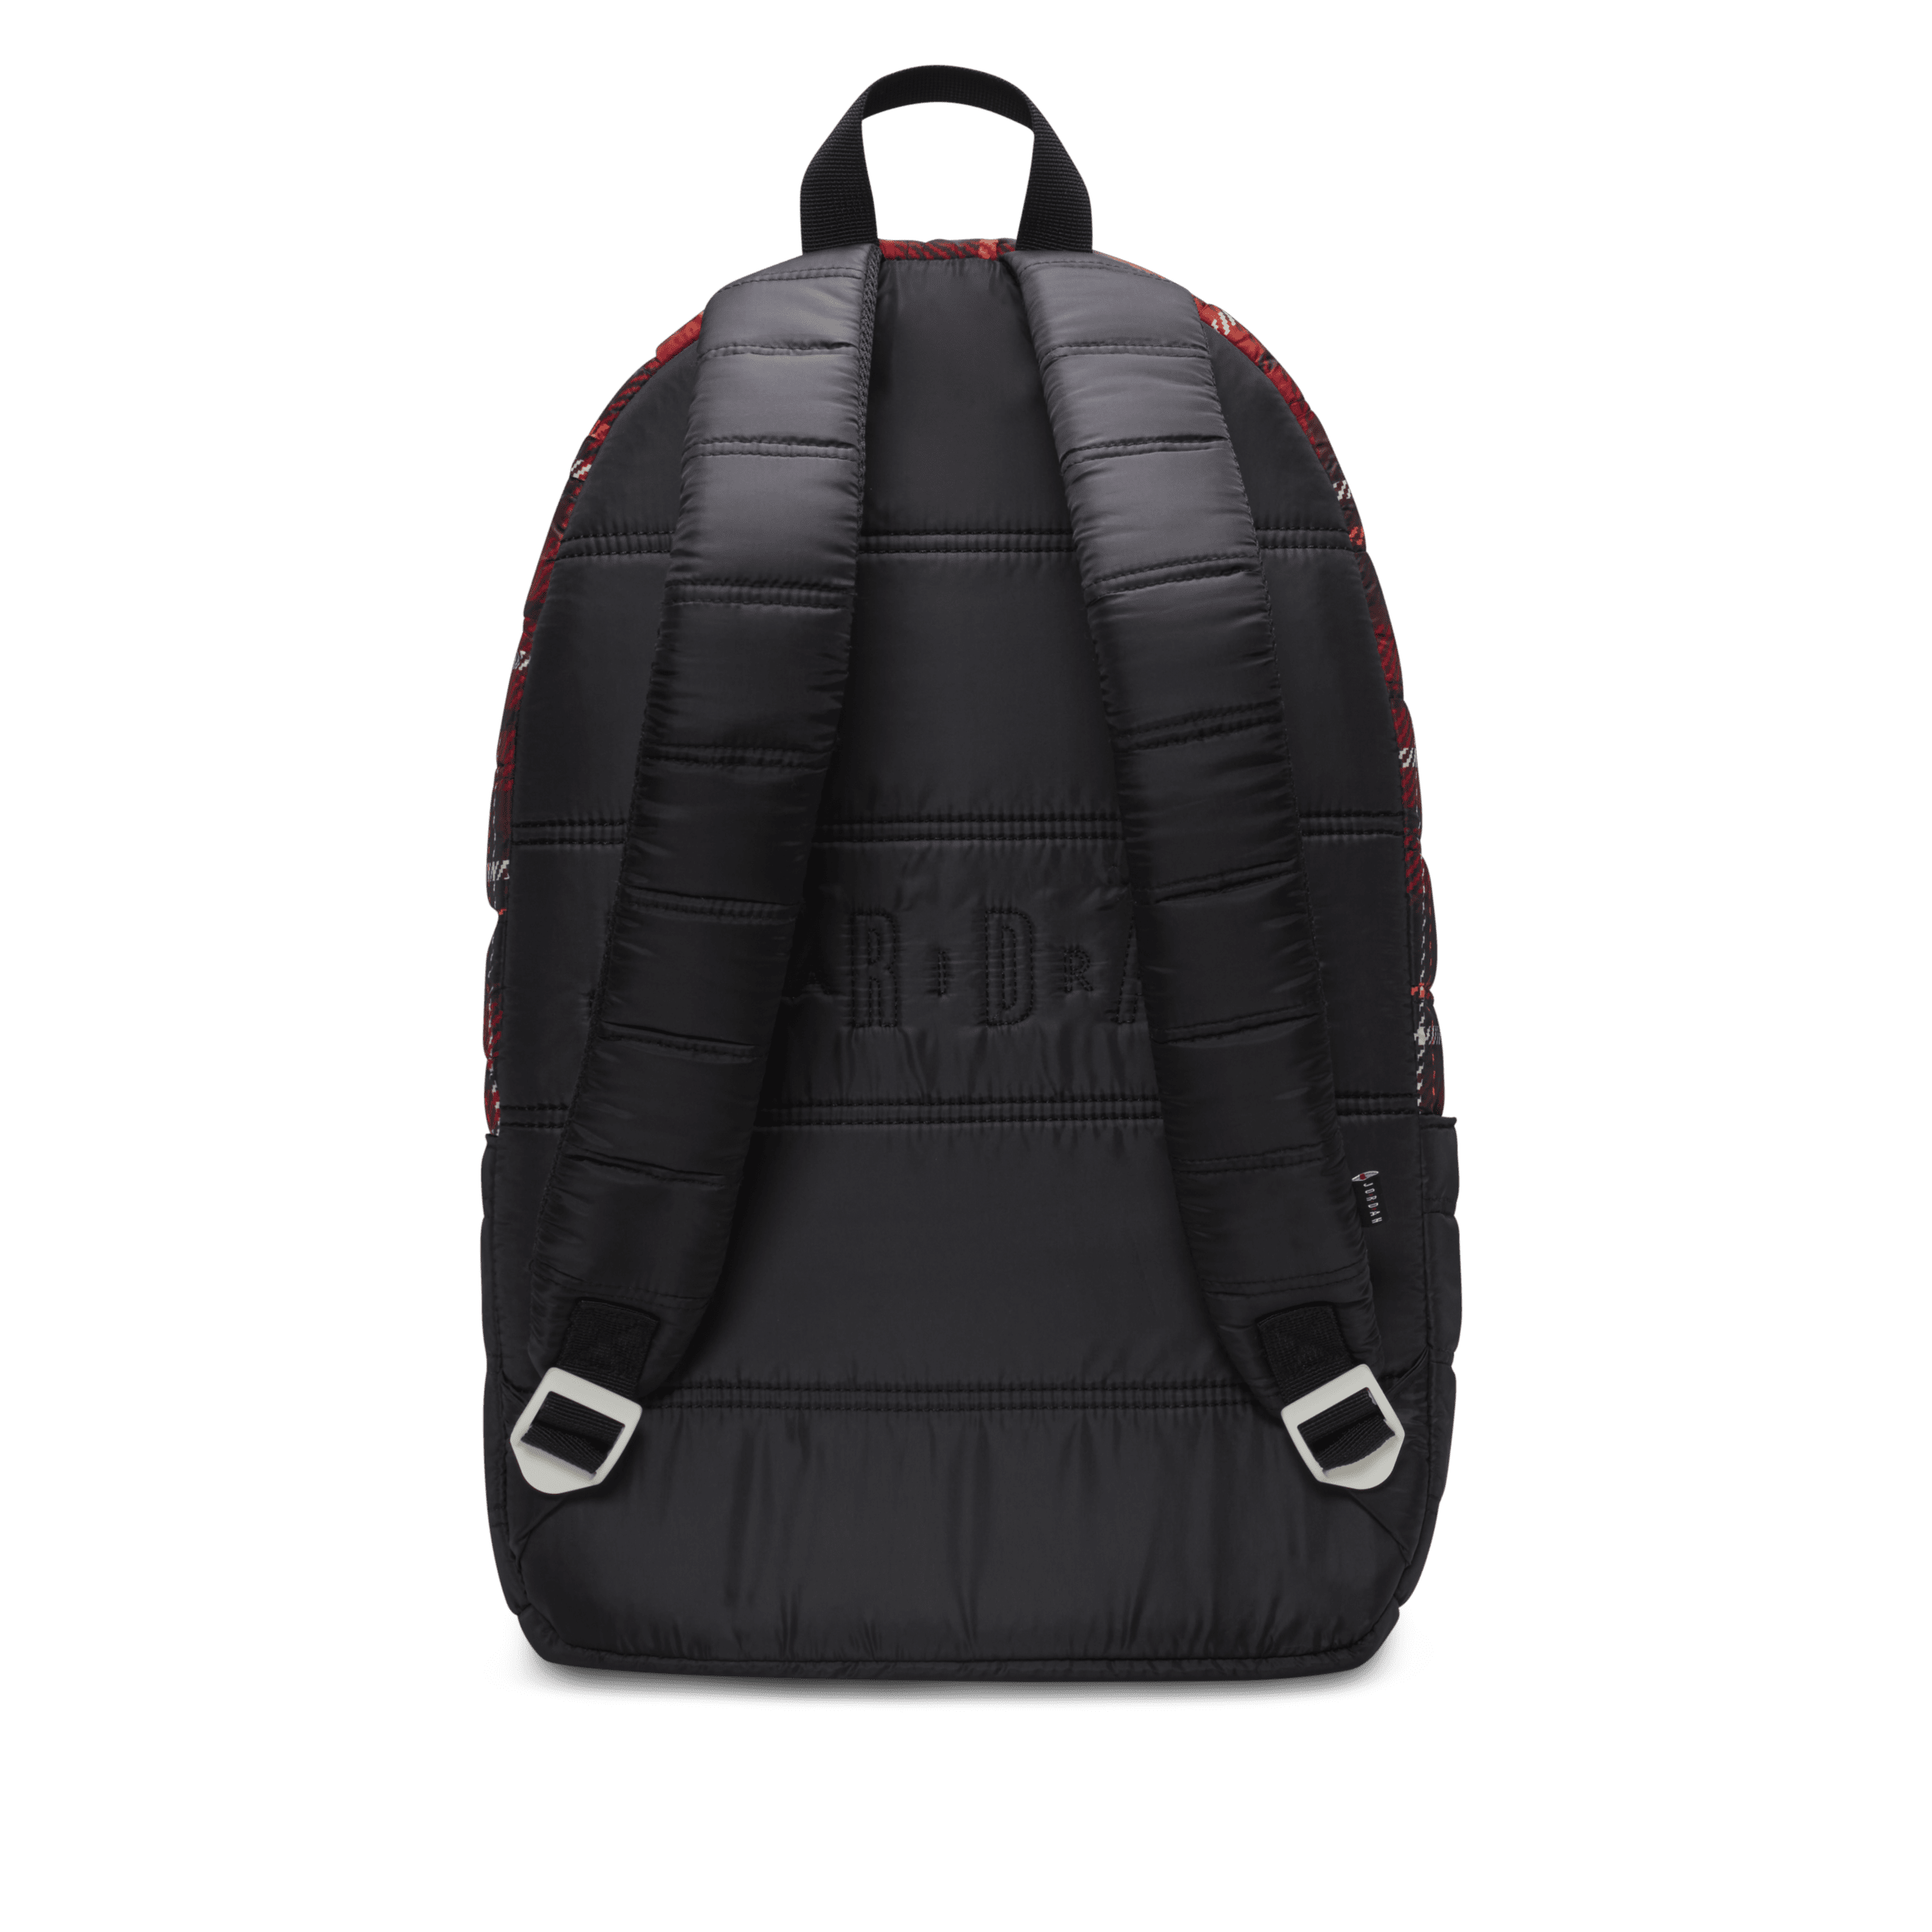 Jordan Quilted Backpack rugzak (19 liter) Rood